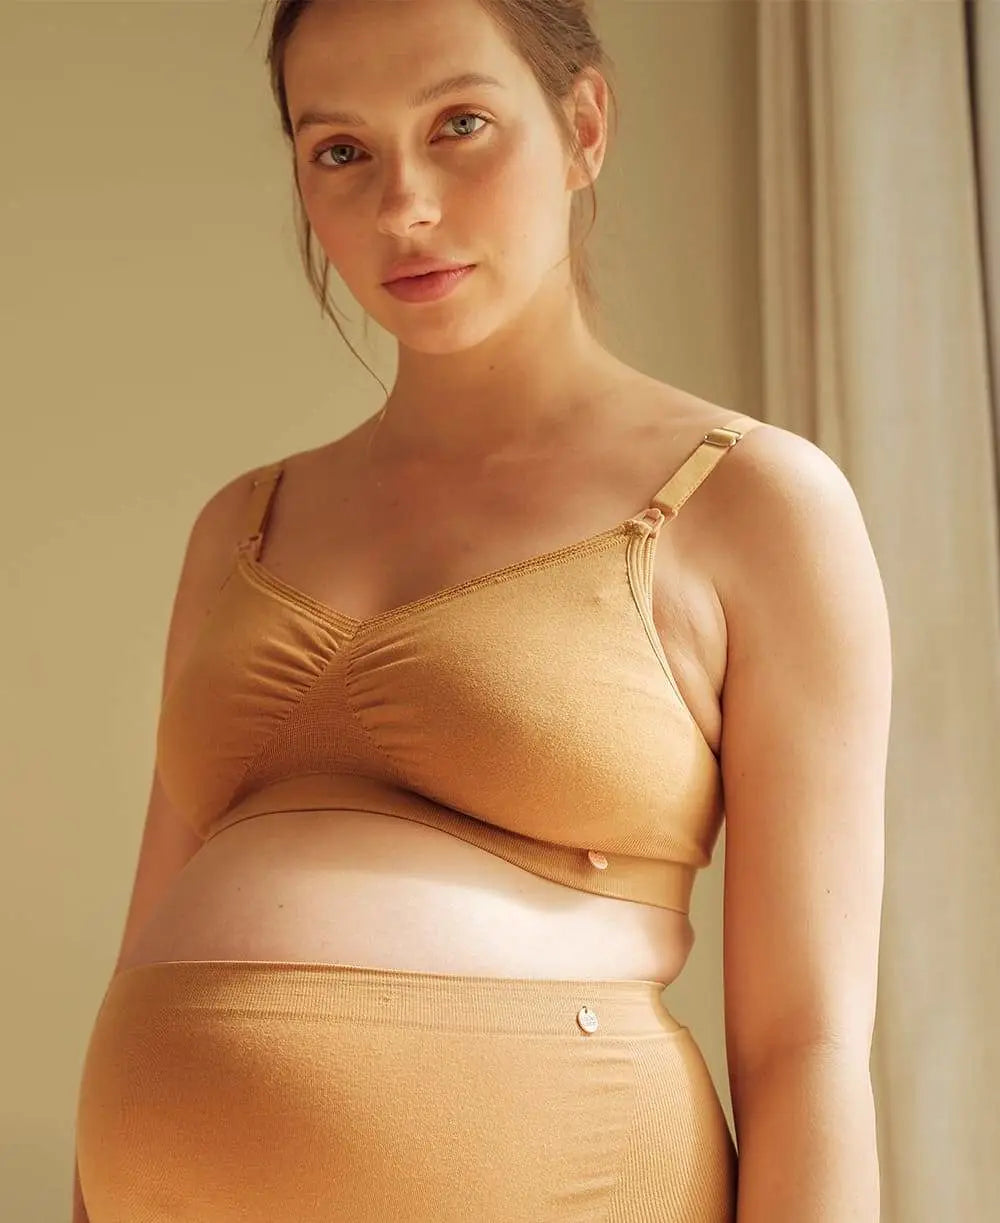 Plus Size Lace lingerie Maternity & Nursing Bras – EVOLVING